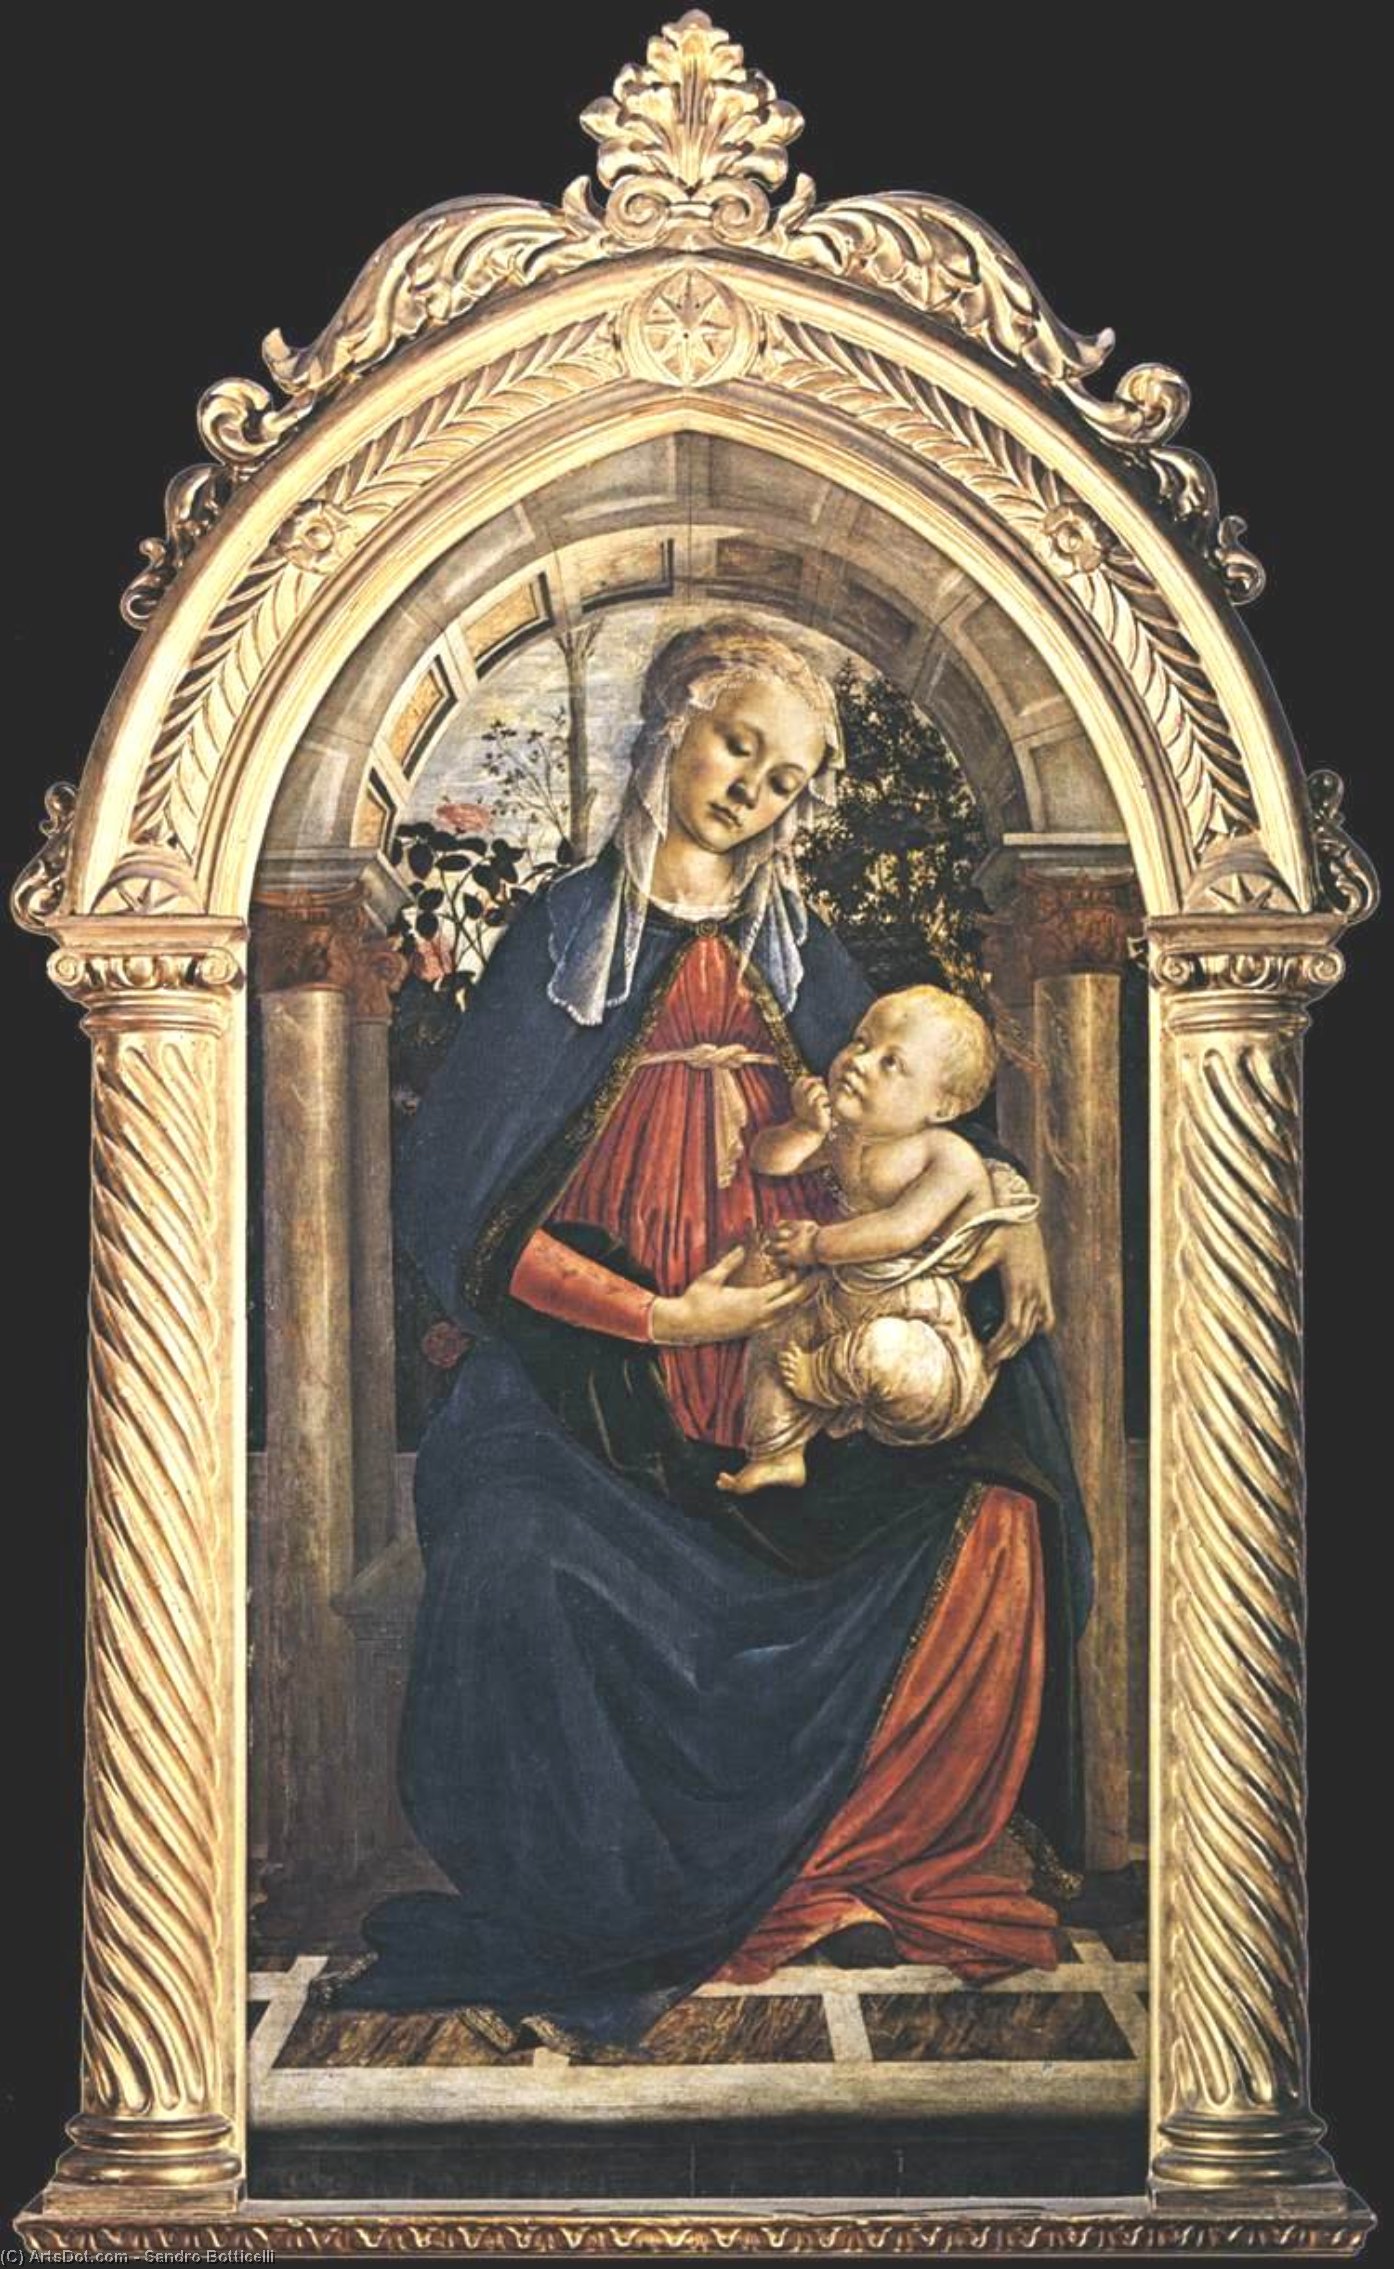 Achat Reproductions De Peintures Madonna du Rosengarden (également connue sous le nom de Madonna del Roseto), 1469 de Sandro Botticelli (1445-1510, Italy) | ArtsDot.com